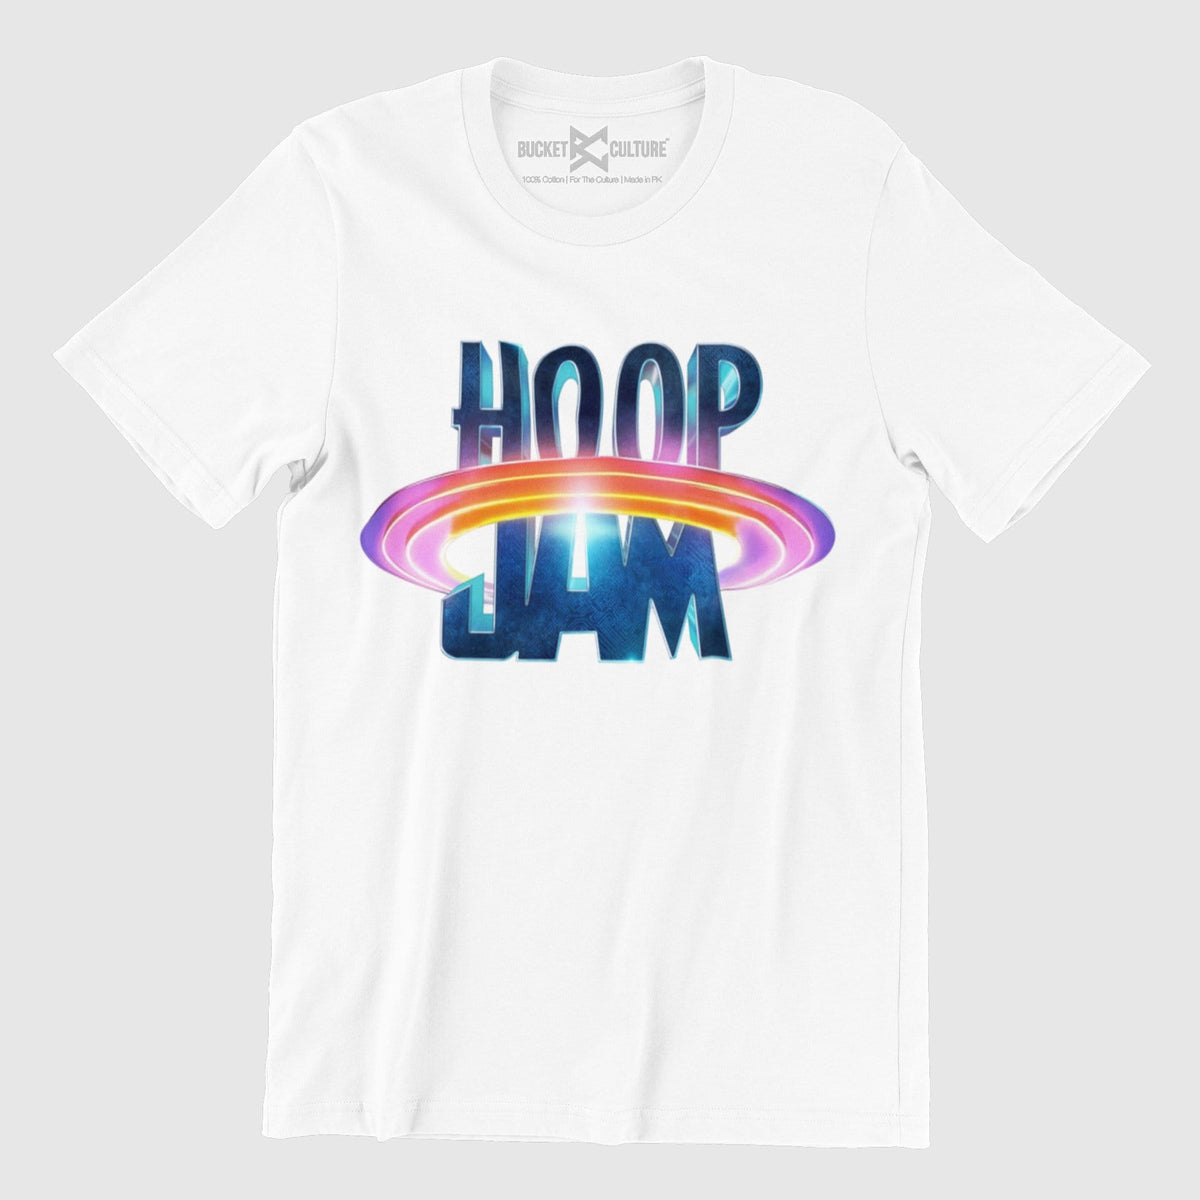 Hoop Jam T-Shirt